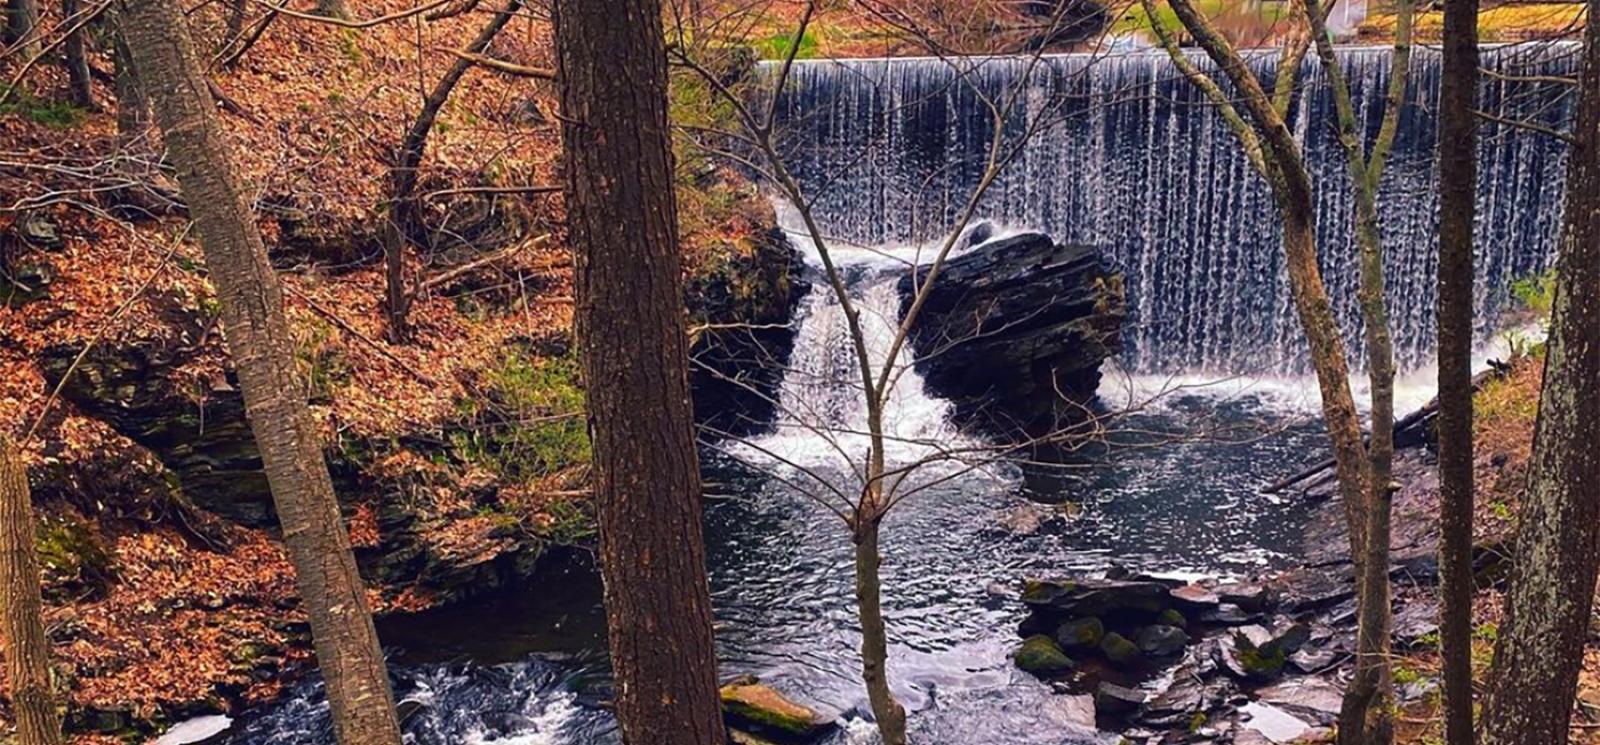 Una cascada en el bosque cerca de un puente (Instagram@deppinlove)